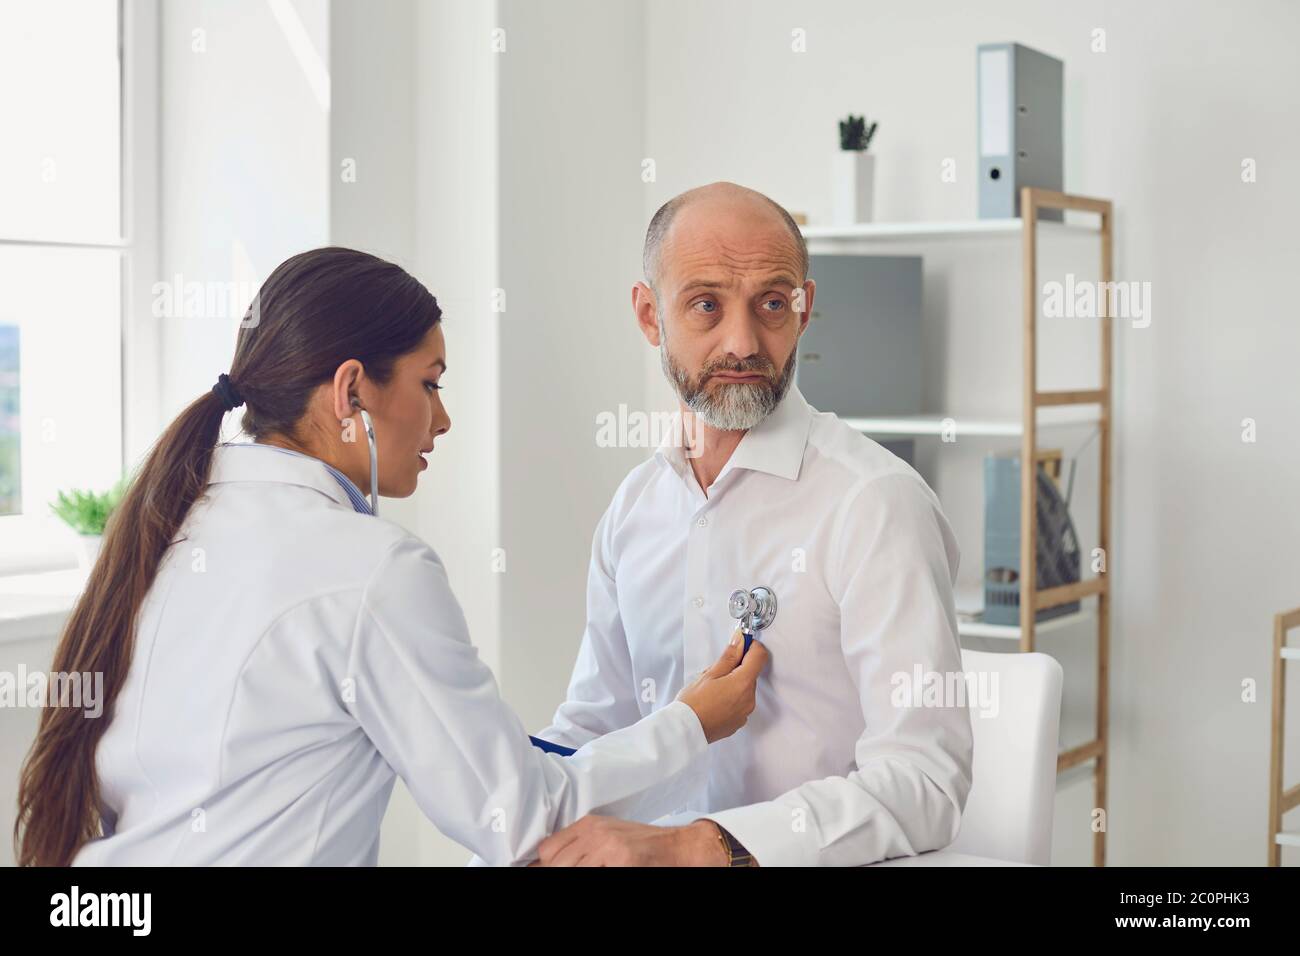 Frau Arzt Kardiologe hört mit Stethoskop zu Patienten senor Mann in der  Klinik Büro. Besuch beim Arzt in einem medizinischen Krankenhaus  Stockfotografie - Alamy